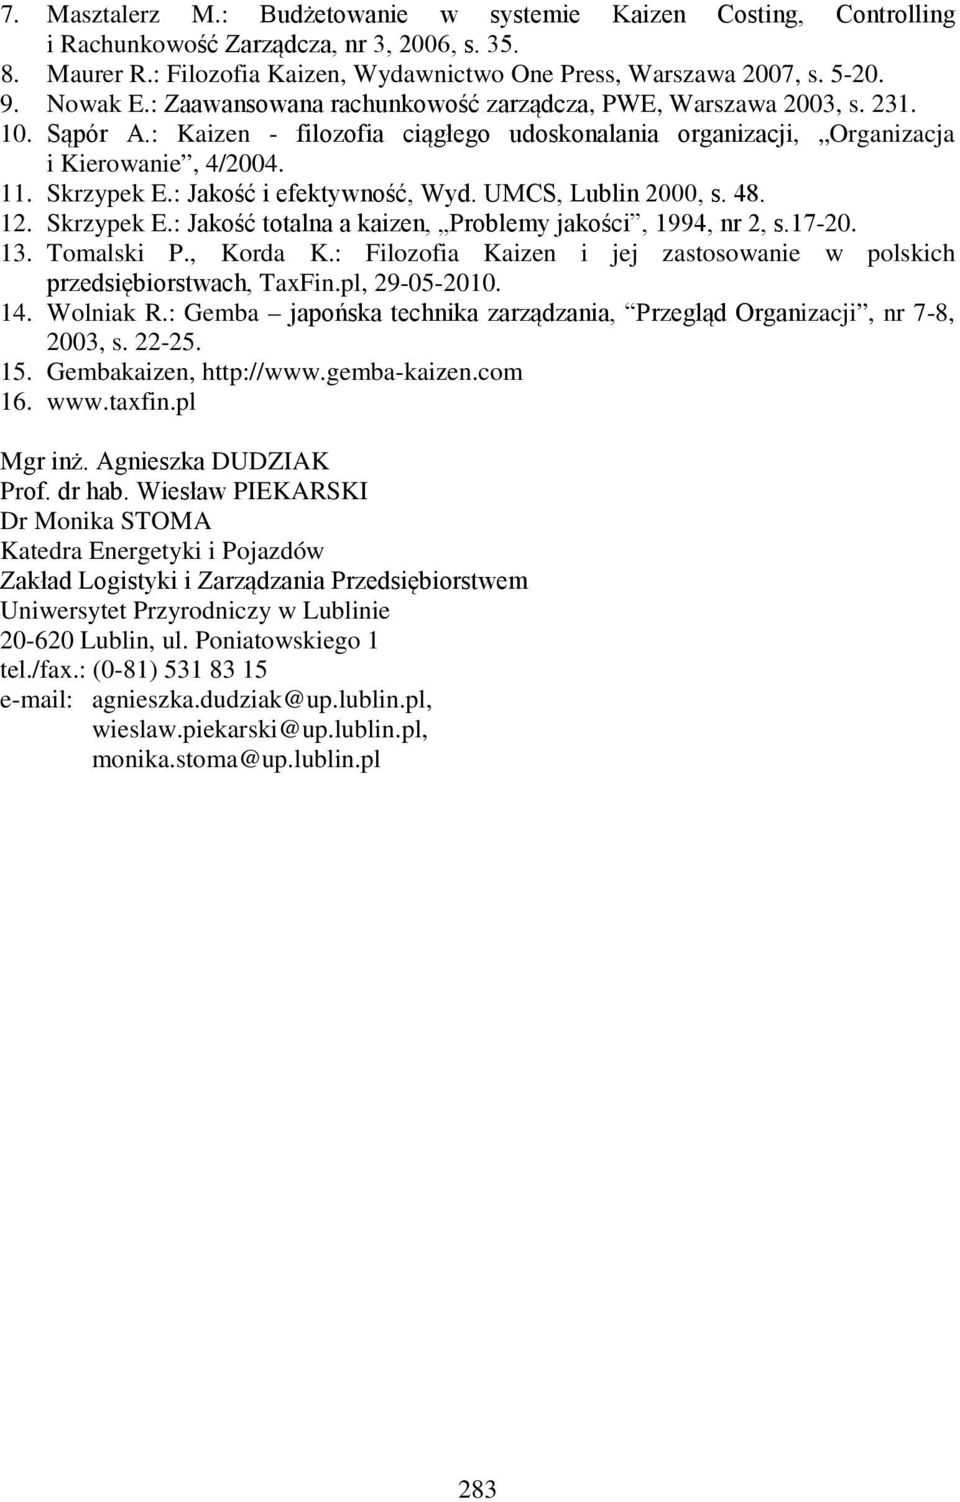 : Jakość i efektywność, Wyd. UMCS, Lublin 2000, s. 48. 12. Skrzypek E.: Jakość totalna a kaizen, Problemy jakości, 1994, nr 2, s.17-20. 13. Tomalski P., Korda K.